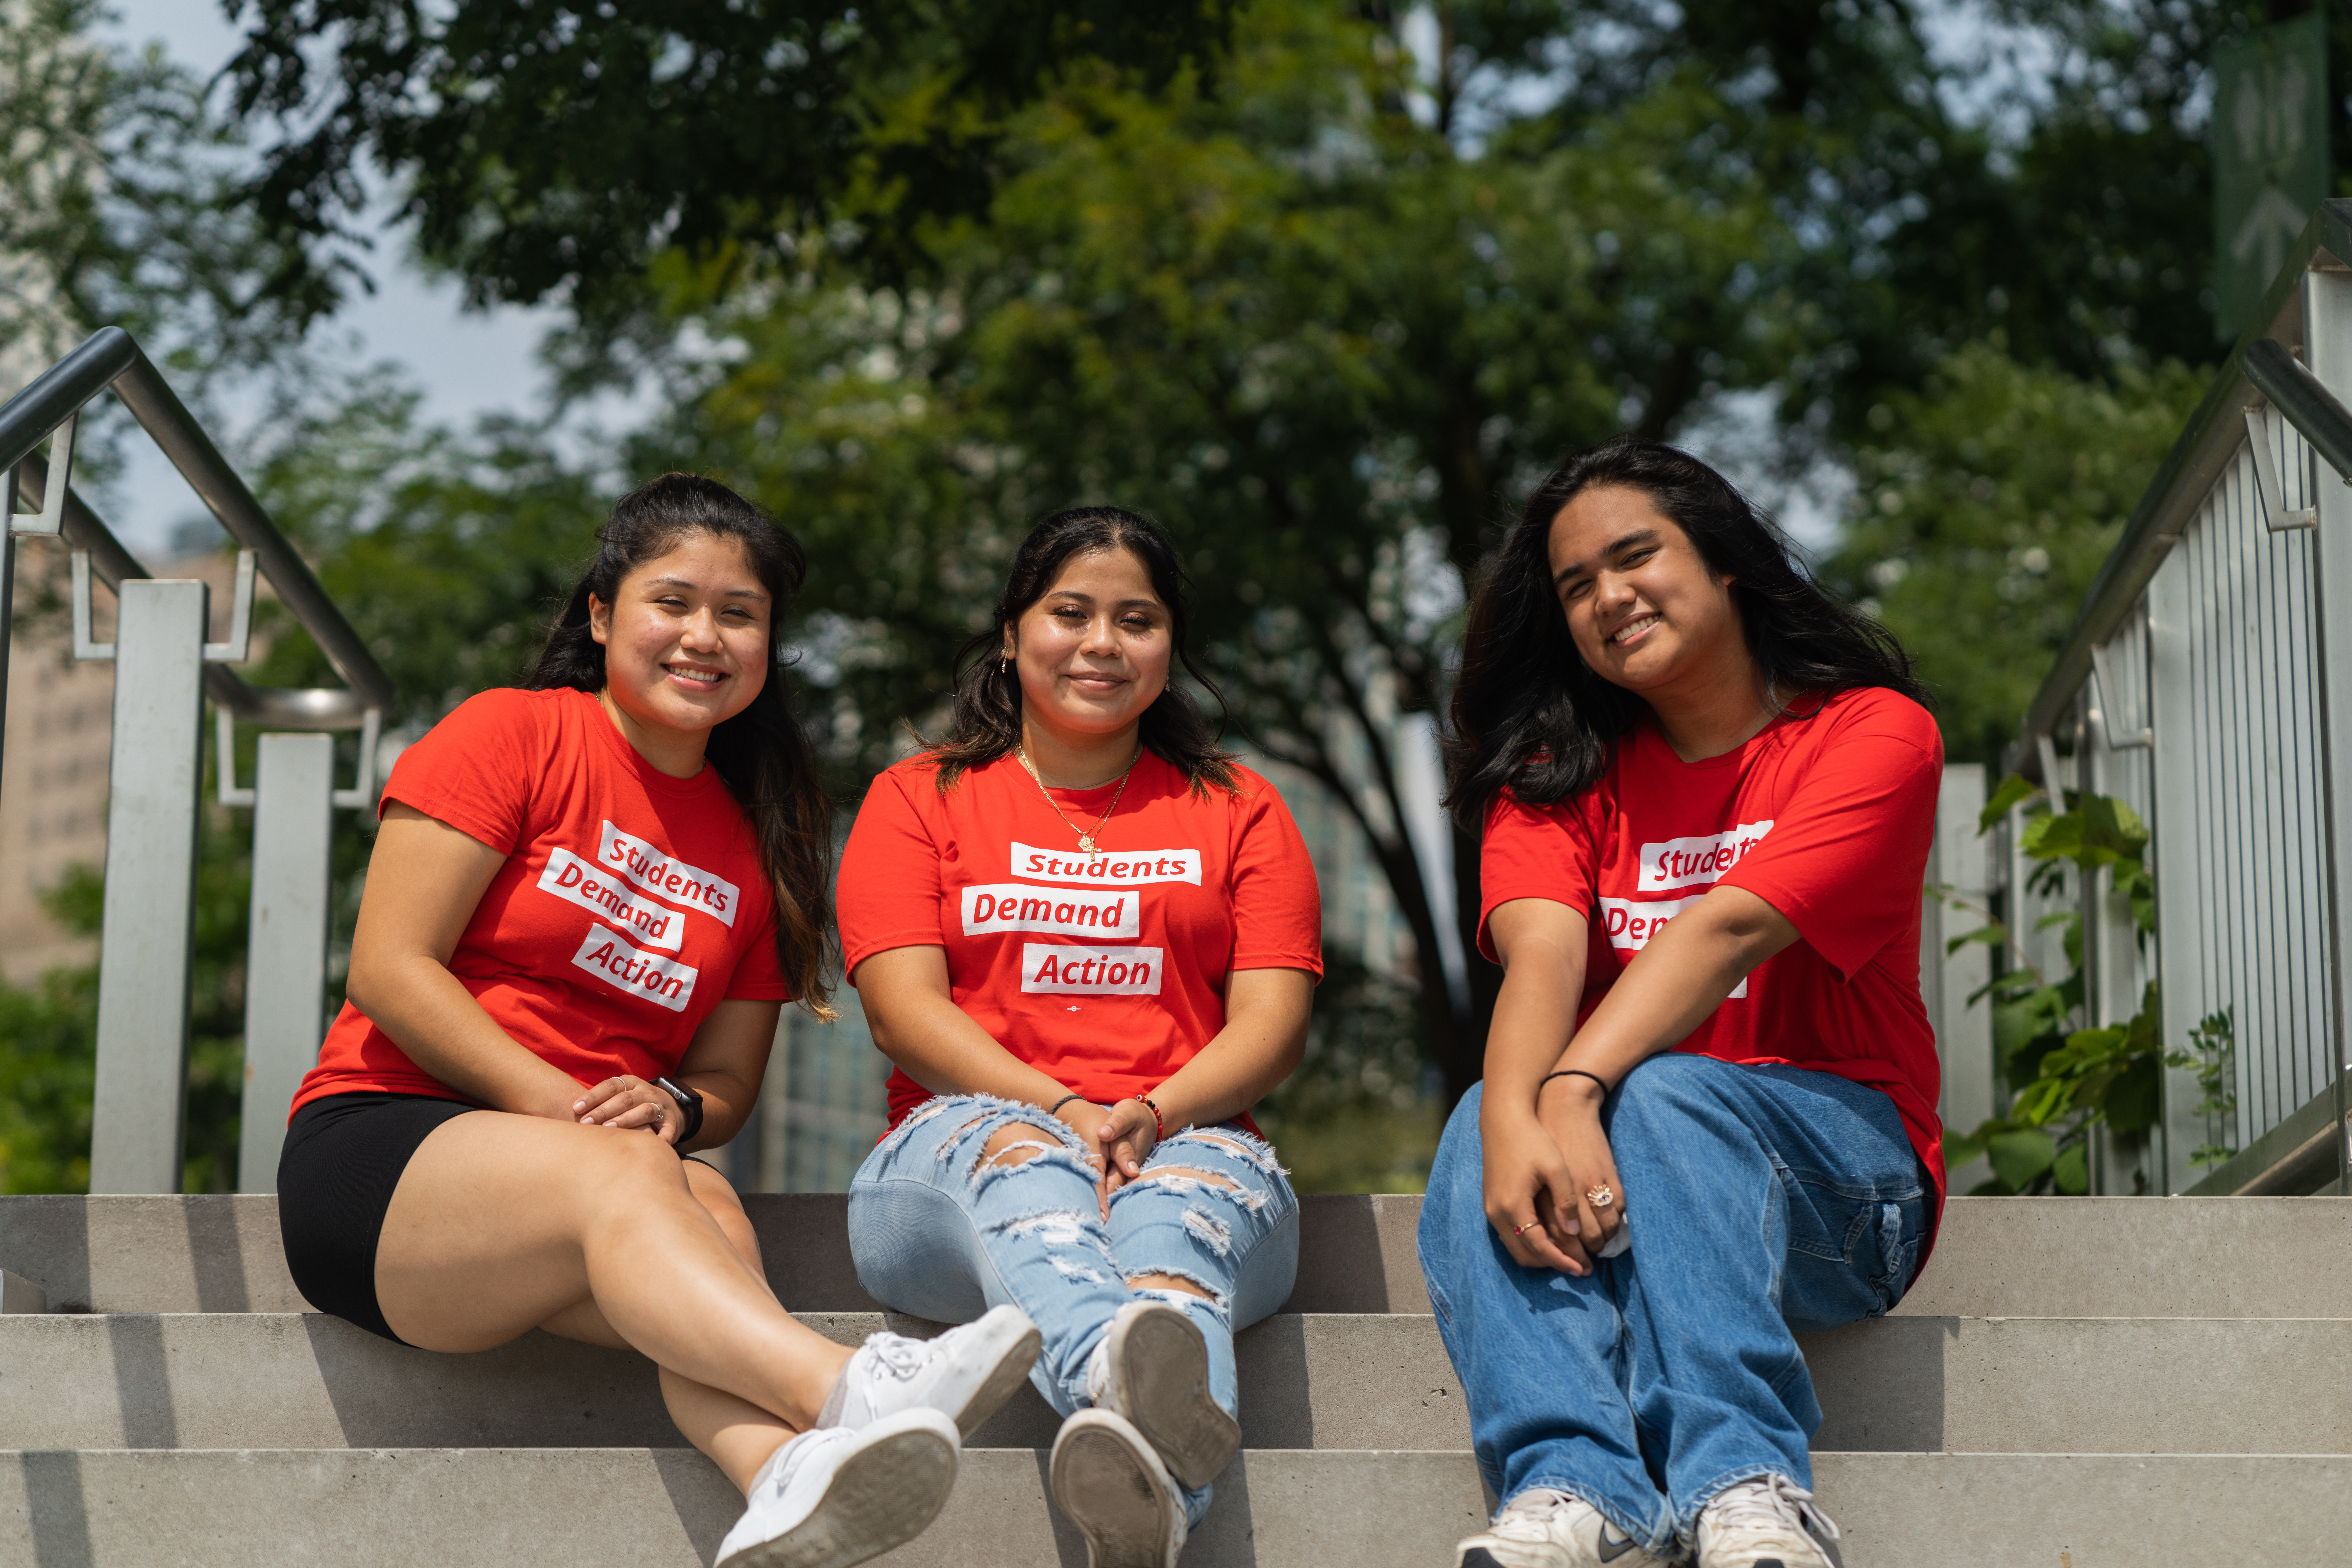 Three Students Demand Action volunteers